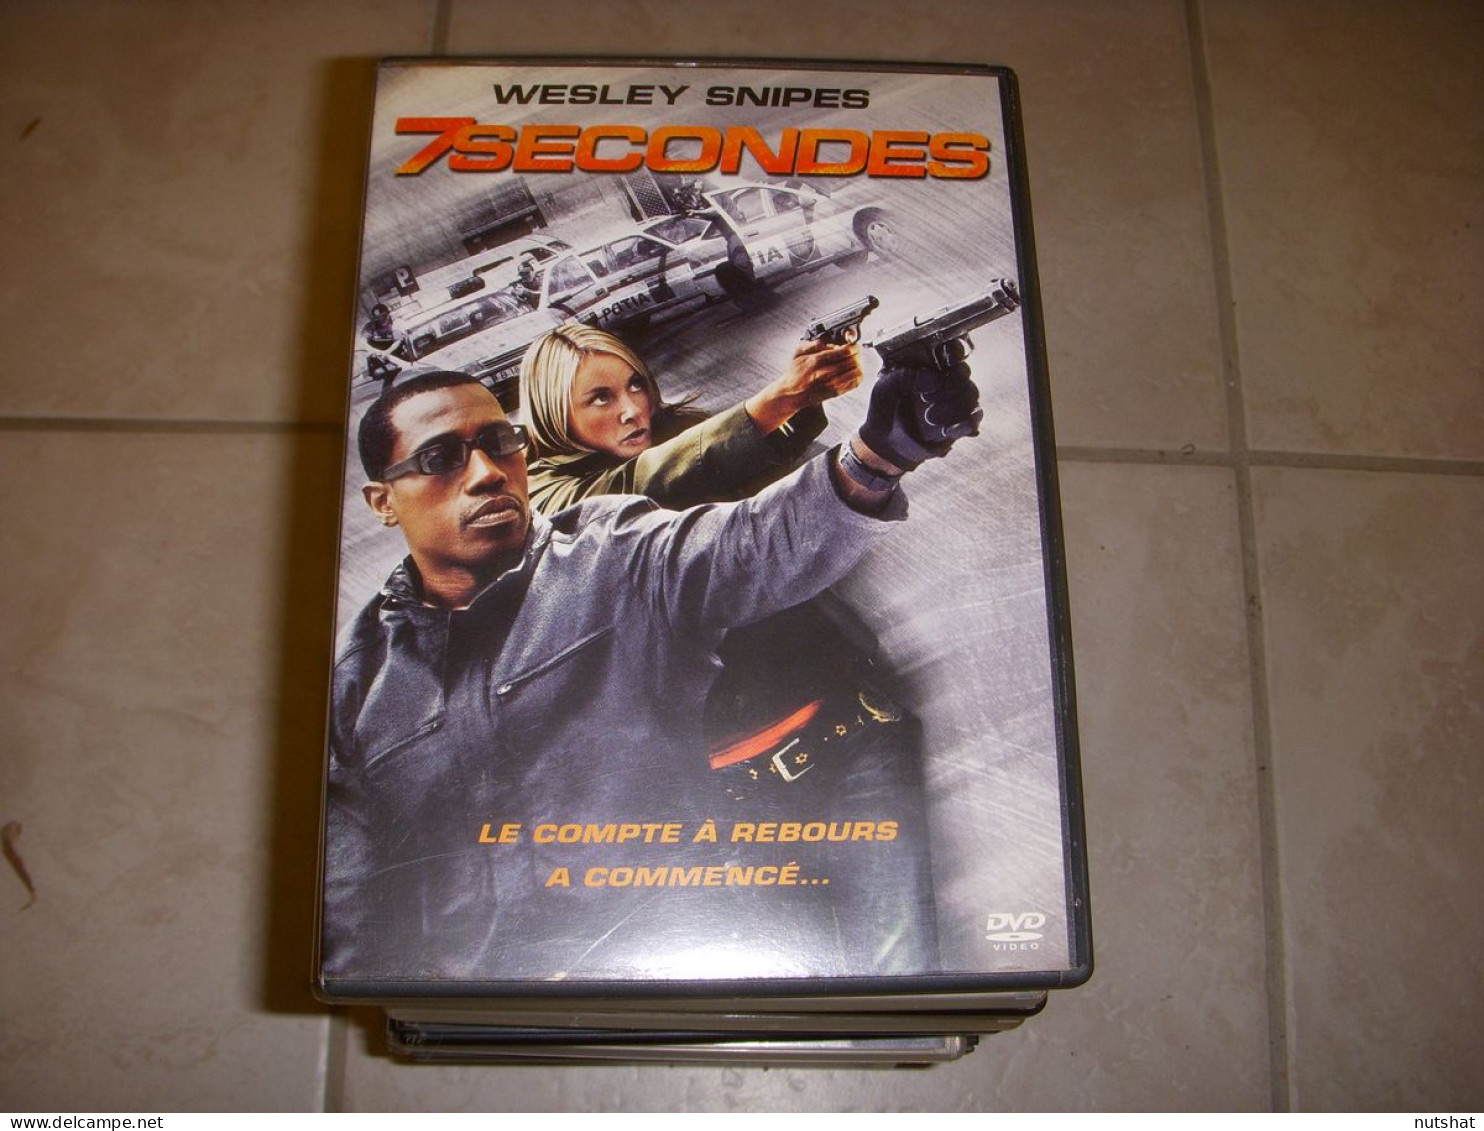 DVD CINEMA 7 SECONDES Wesley SNIPES 2005 92mn FR-UK-ES-IT - Action, Adventure